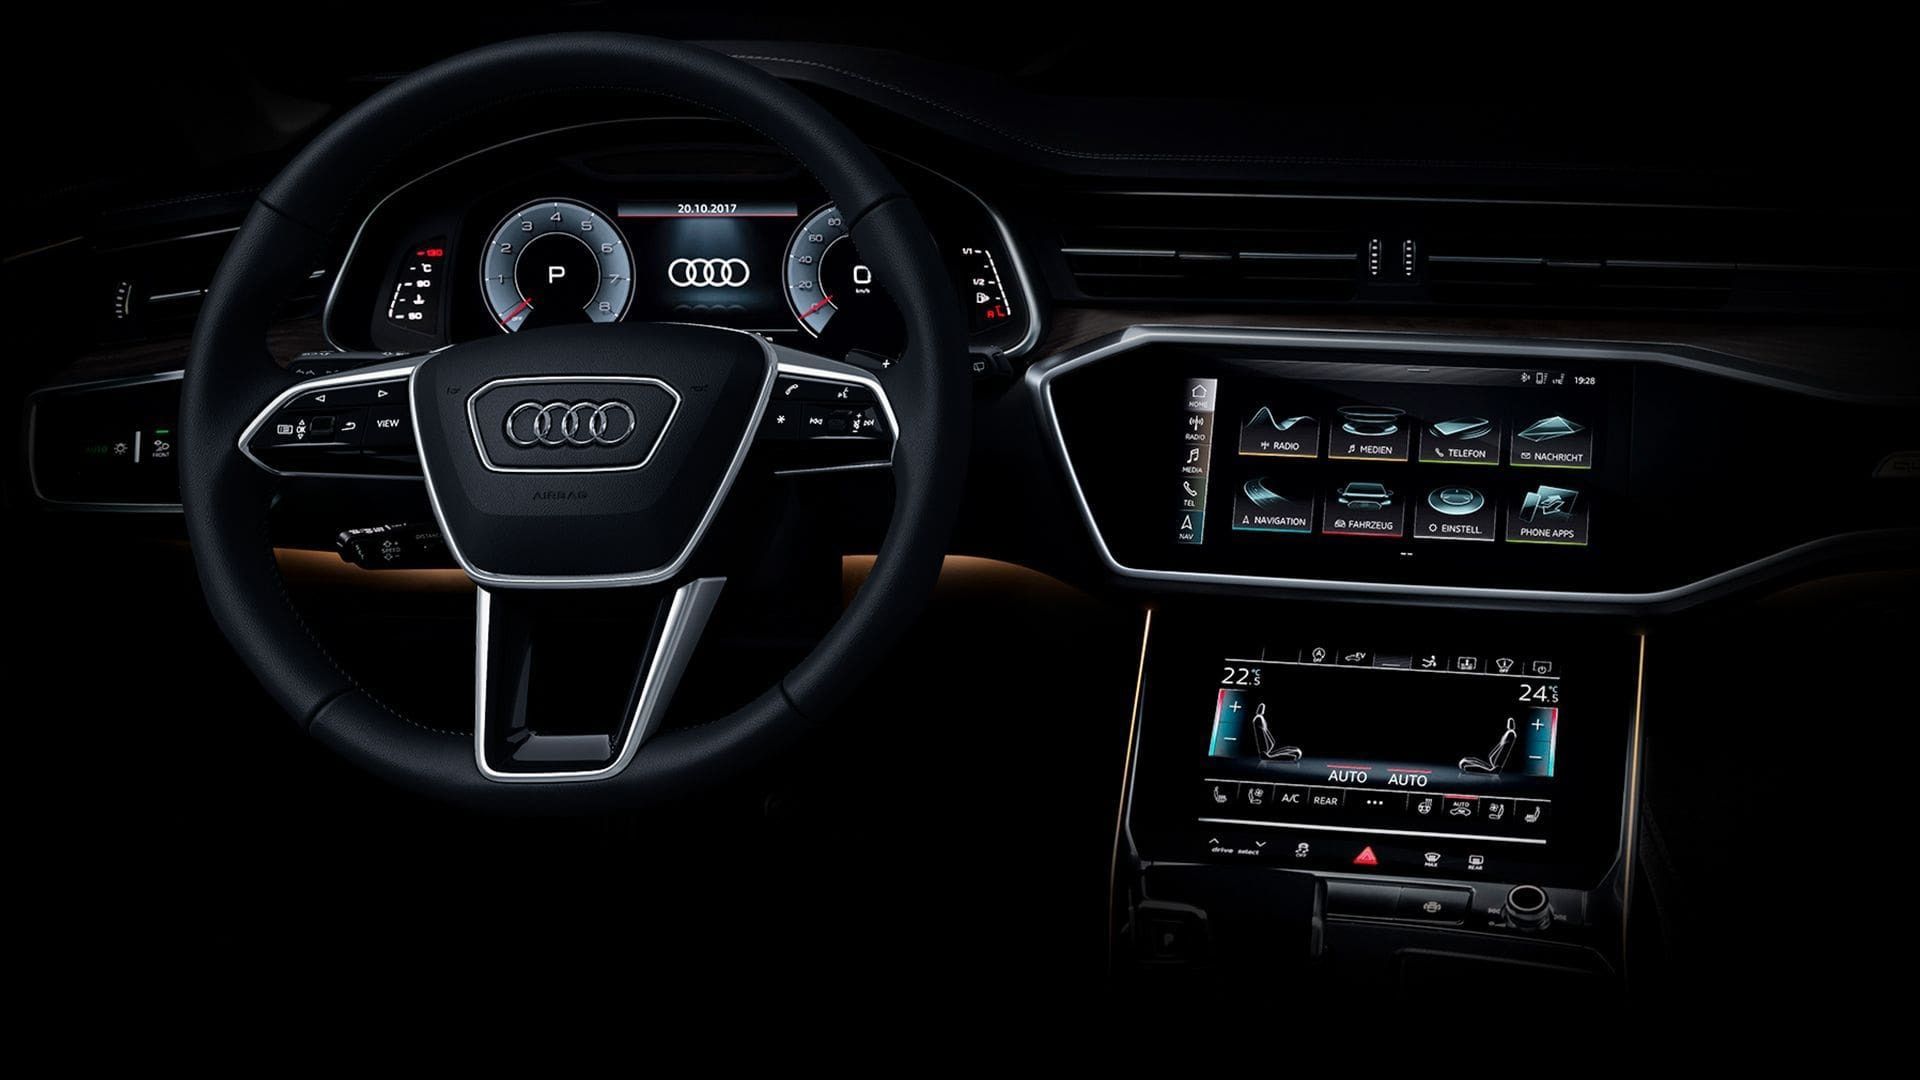 Audi S8: Price